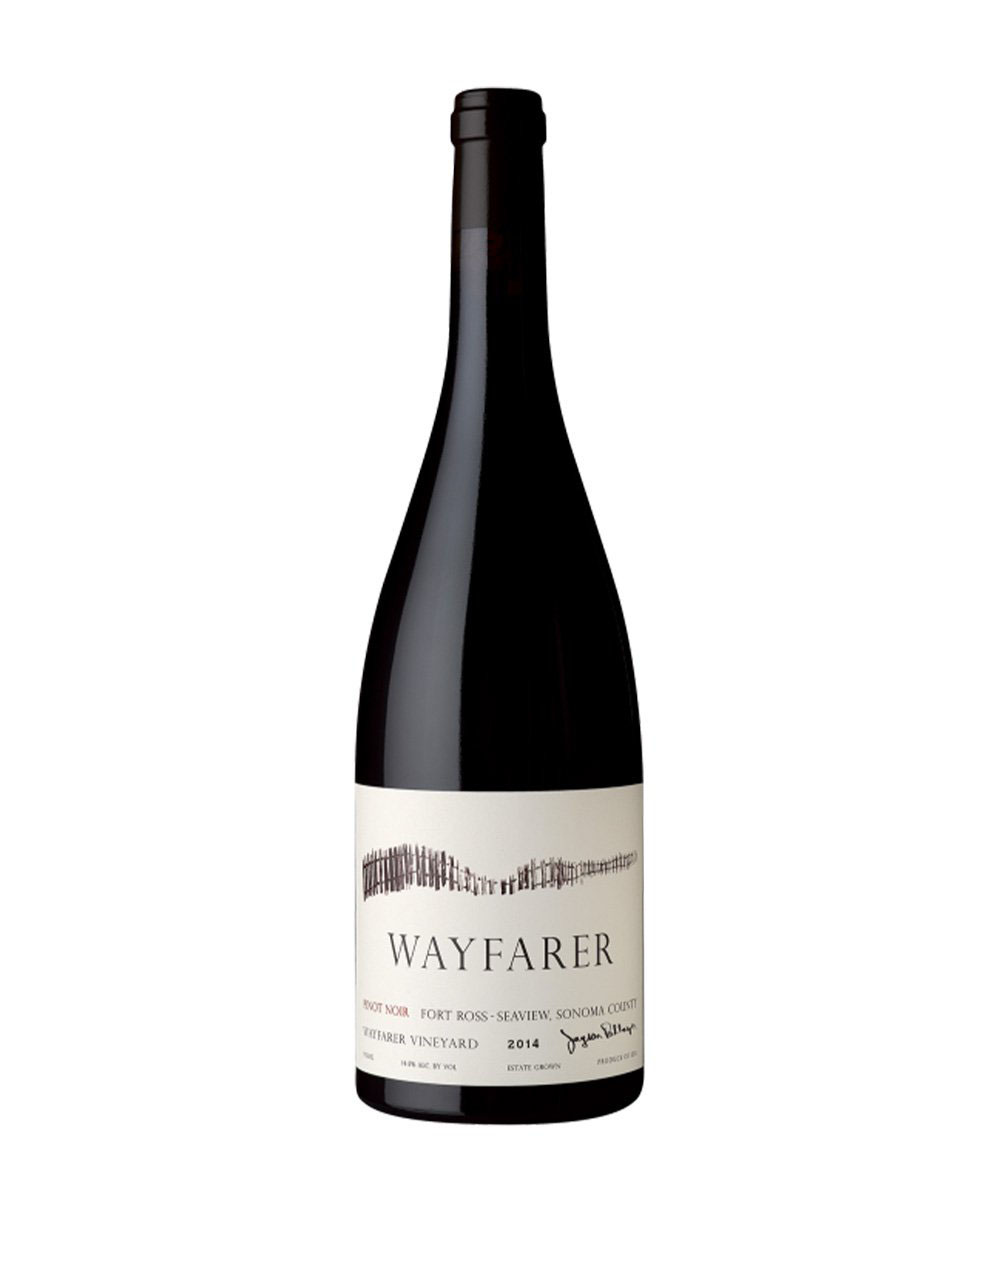 Wayfarer Fort Ross Seaview Golden Mean Pinot Noir 2014